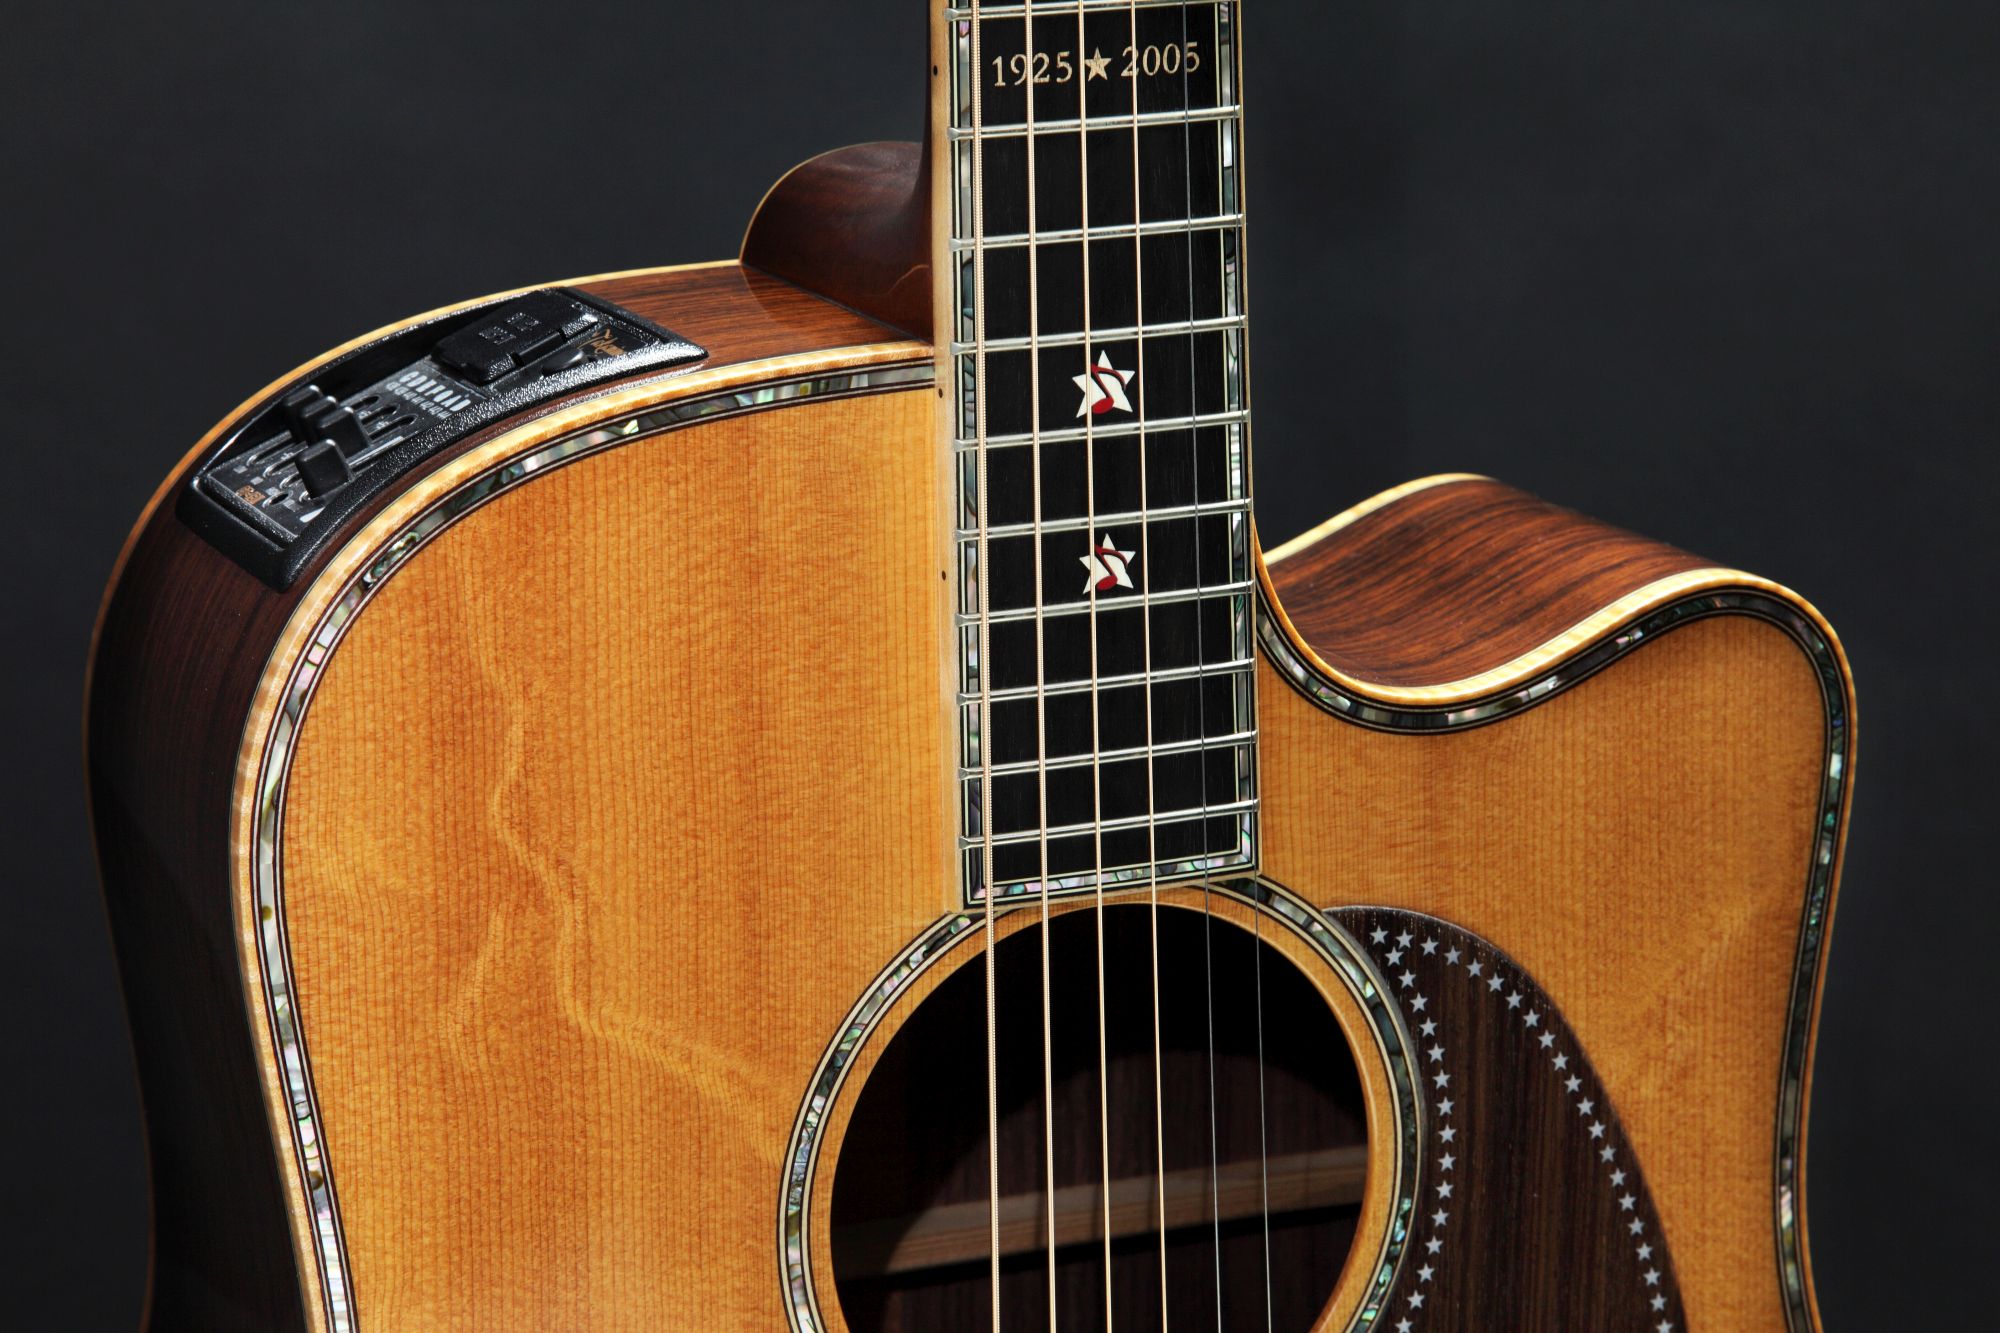 Detailaufnahme der Takamine Grand Ole Opry Akustikgitarre zum 80. Geburtstag von Takamine Guitars.